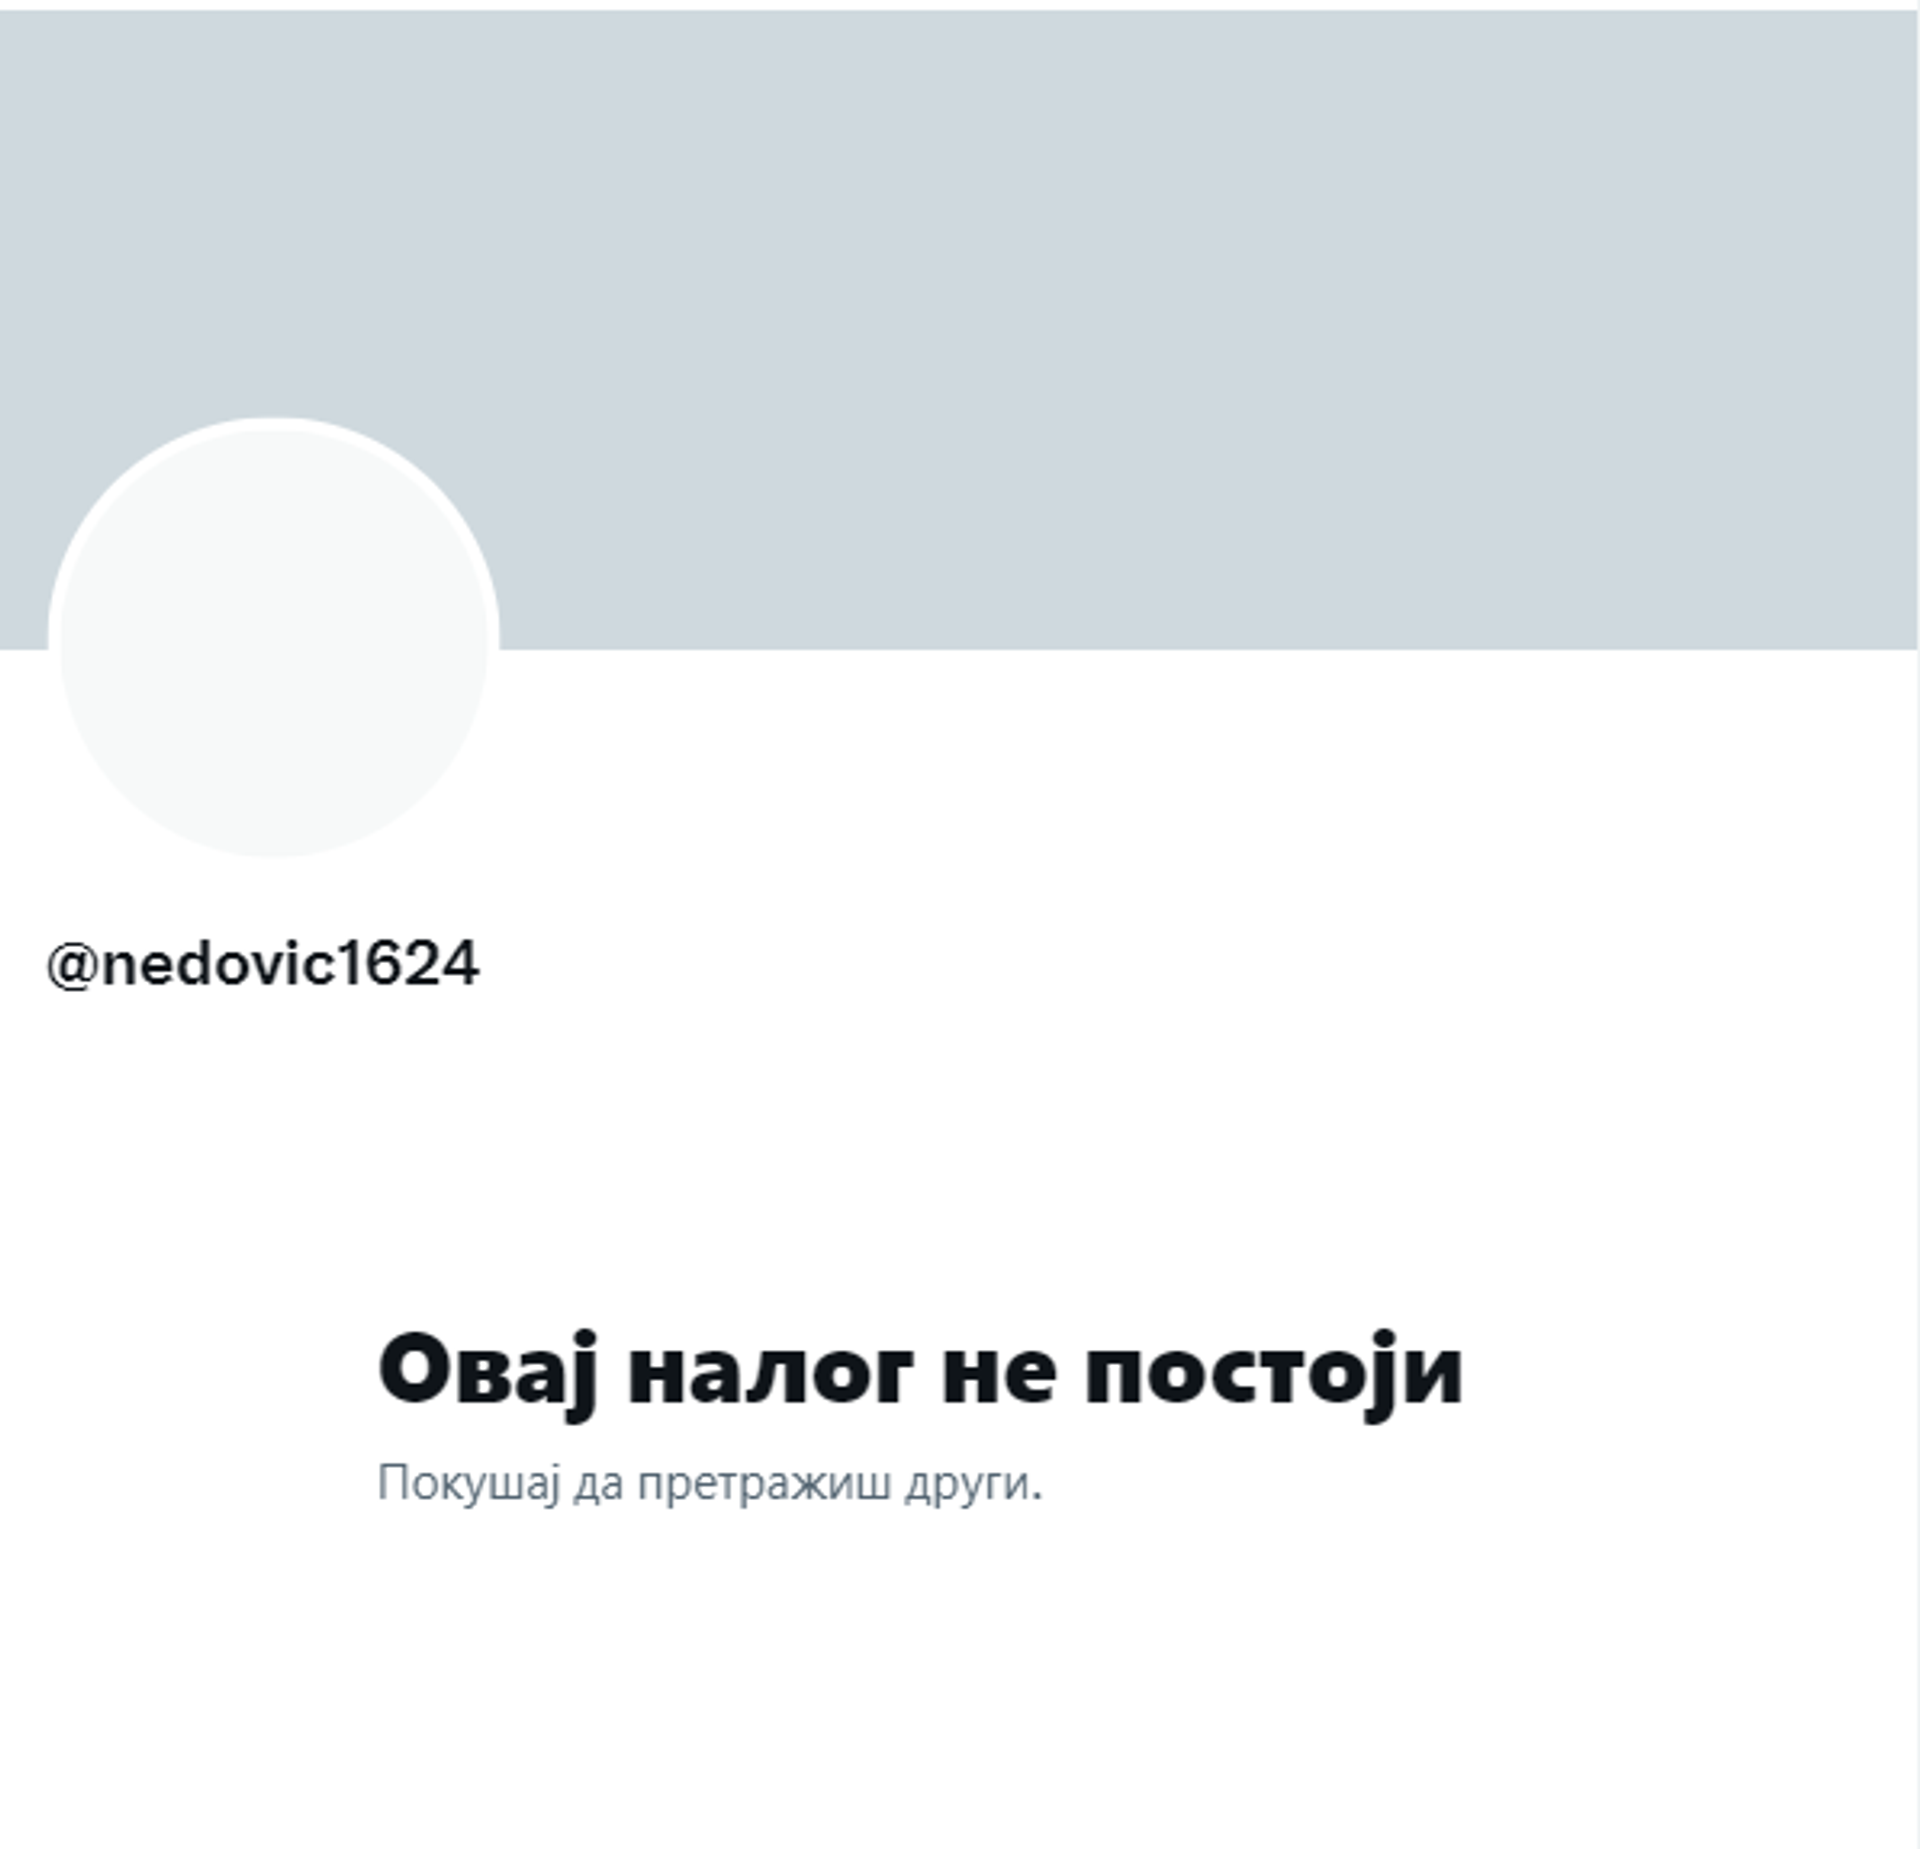 Угашен профил Немање Недовића на Твитеру - Sputnik Србија, 1920, 06.04.2022